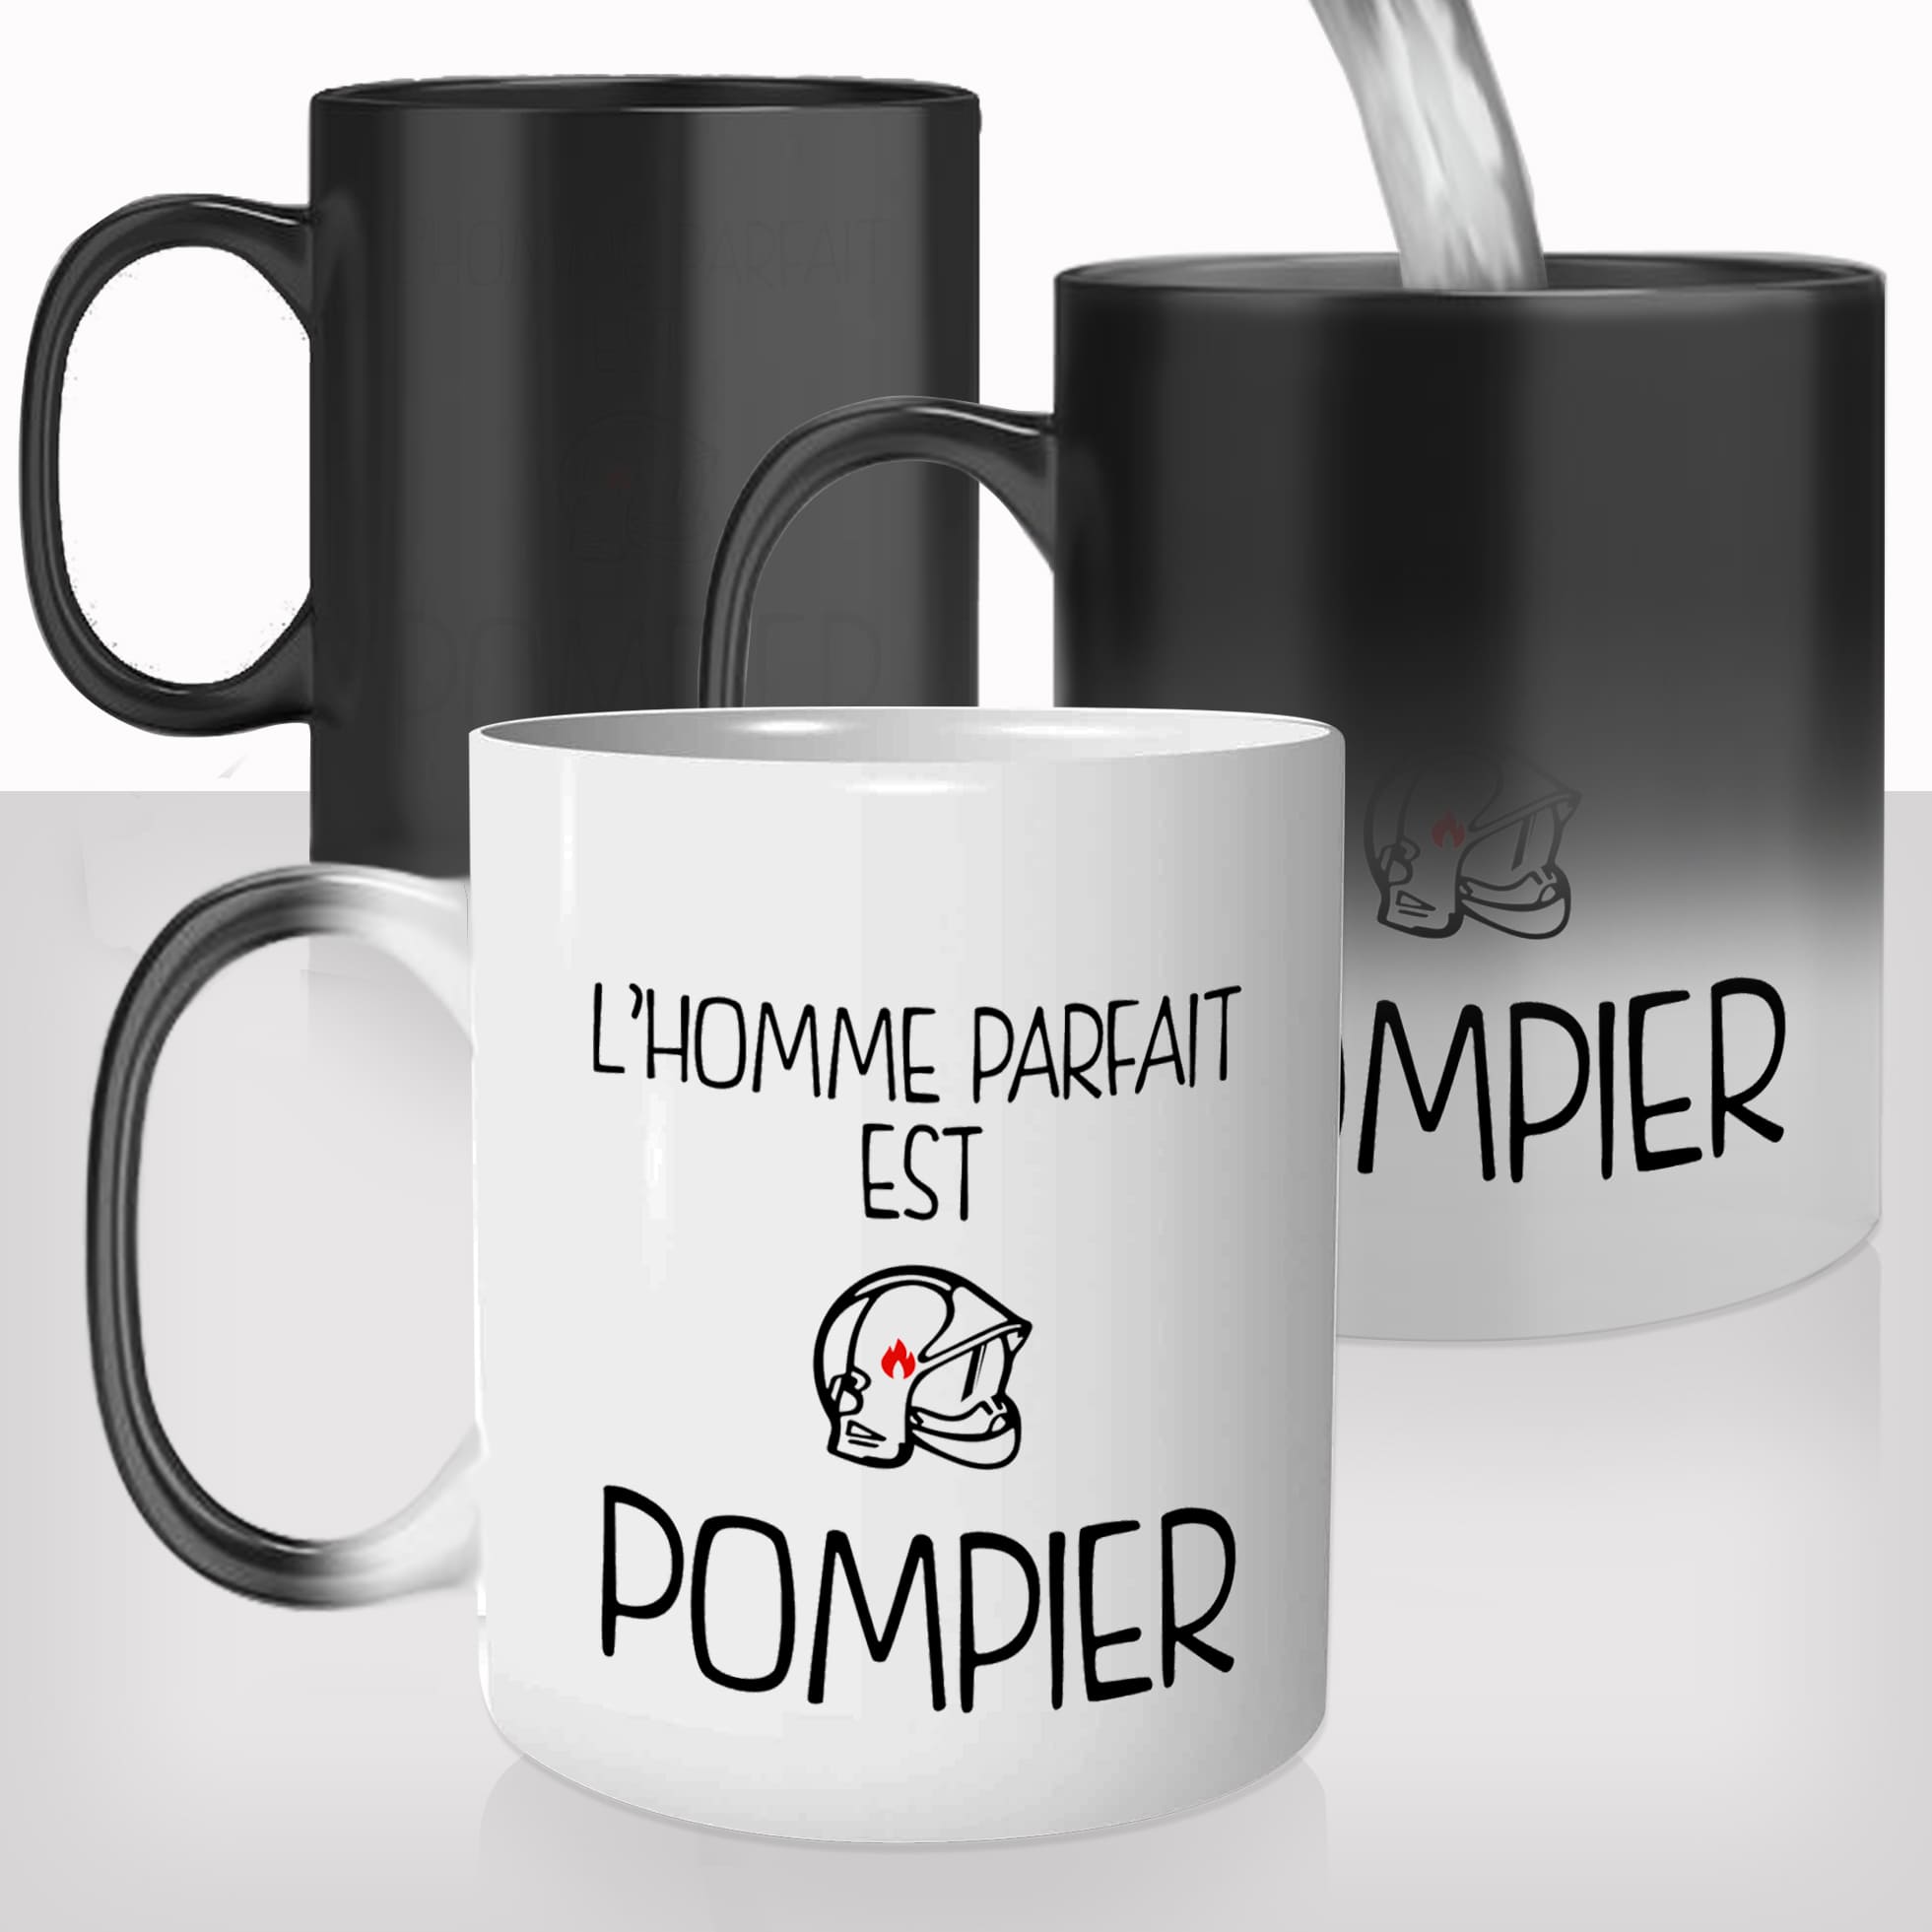 mug-magique-tasse-magic-thermo-reactif-chauffant-metier-lhomme-parfait-est-pompier-volontaire-sexy-photo-personnalisable-fun-cadeau